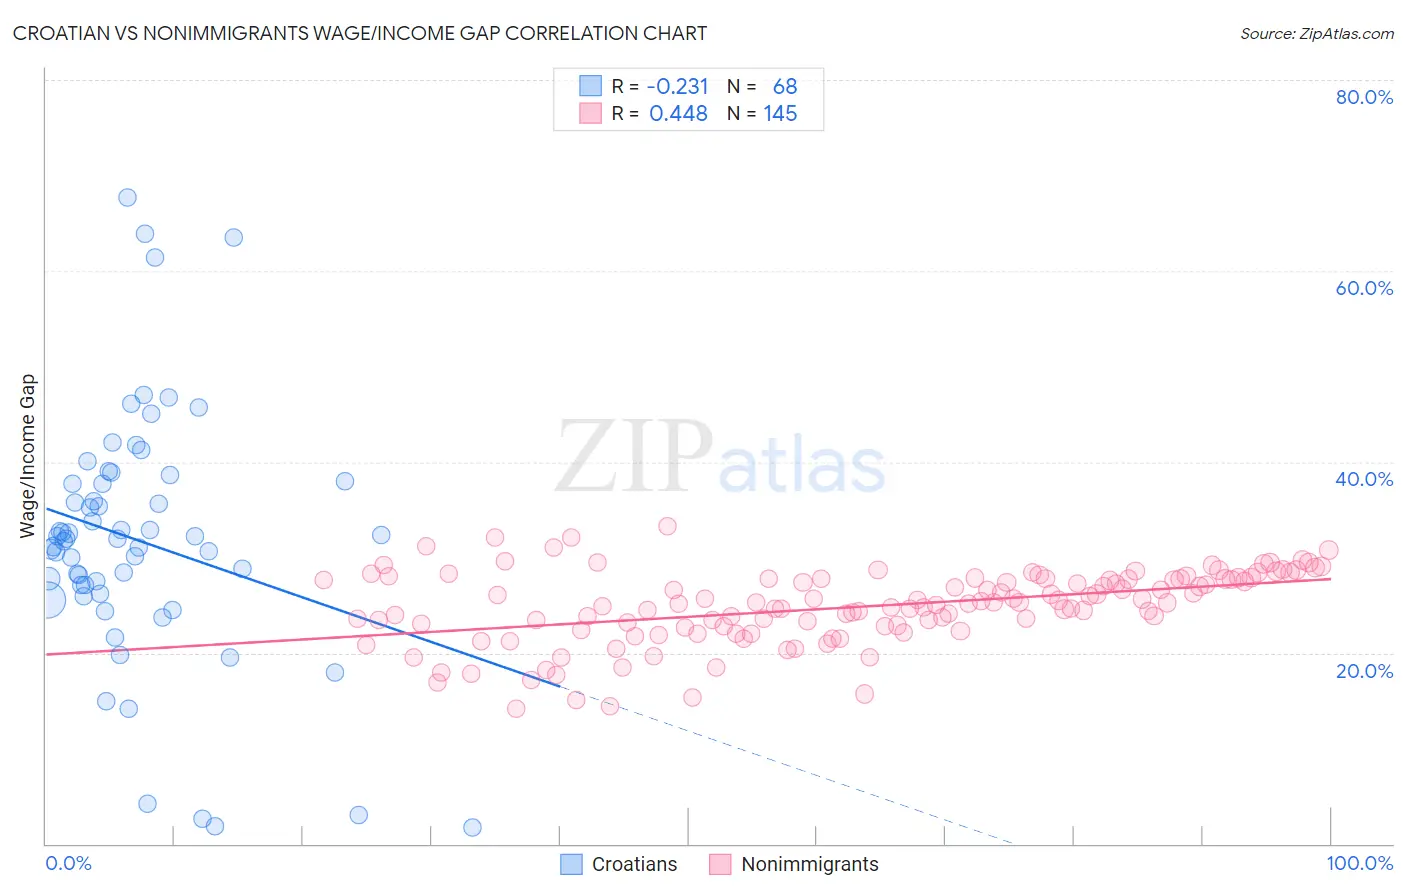 Croatian vs Nonimmigrants Wage/Income Gap